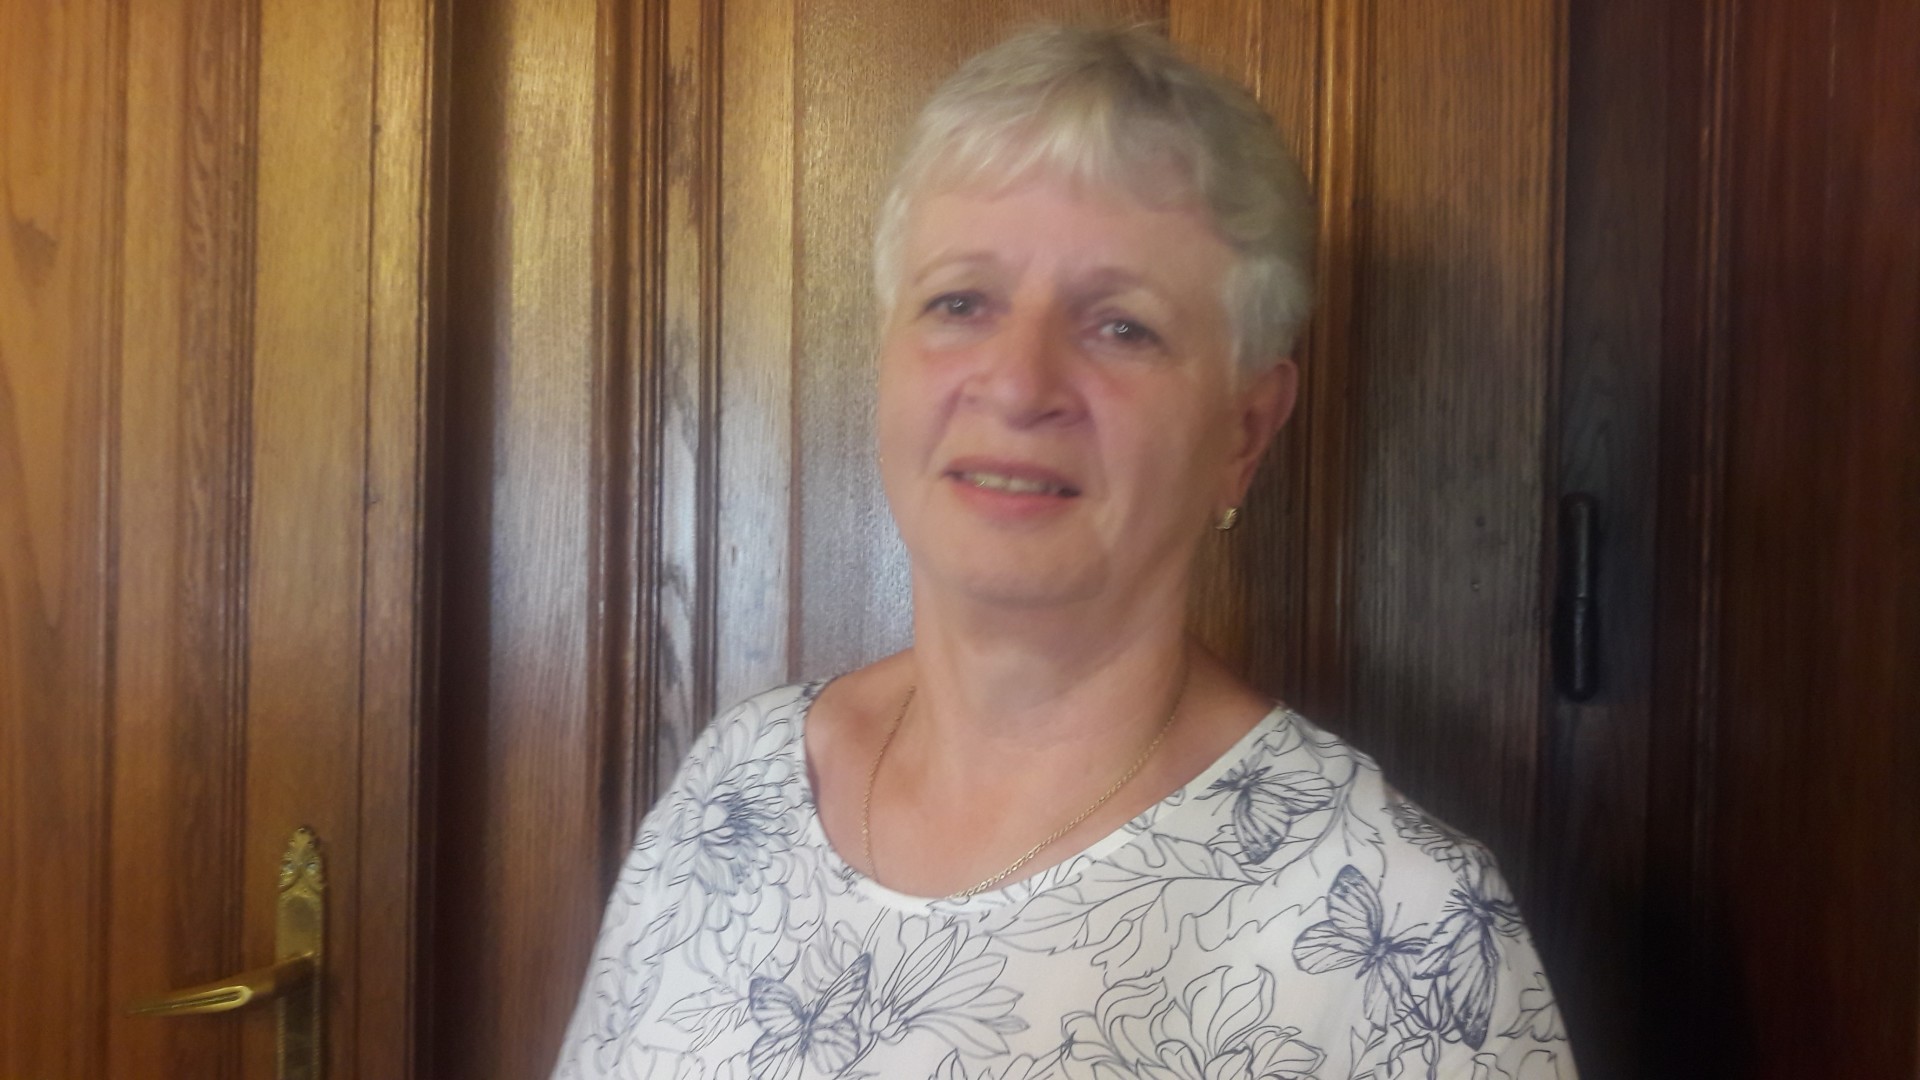 Holcsikné Brummer Mária lett a PSZ Nyugdíjas Tagozatának új vezetője